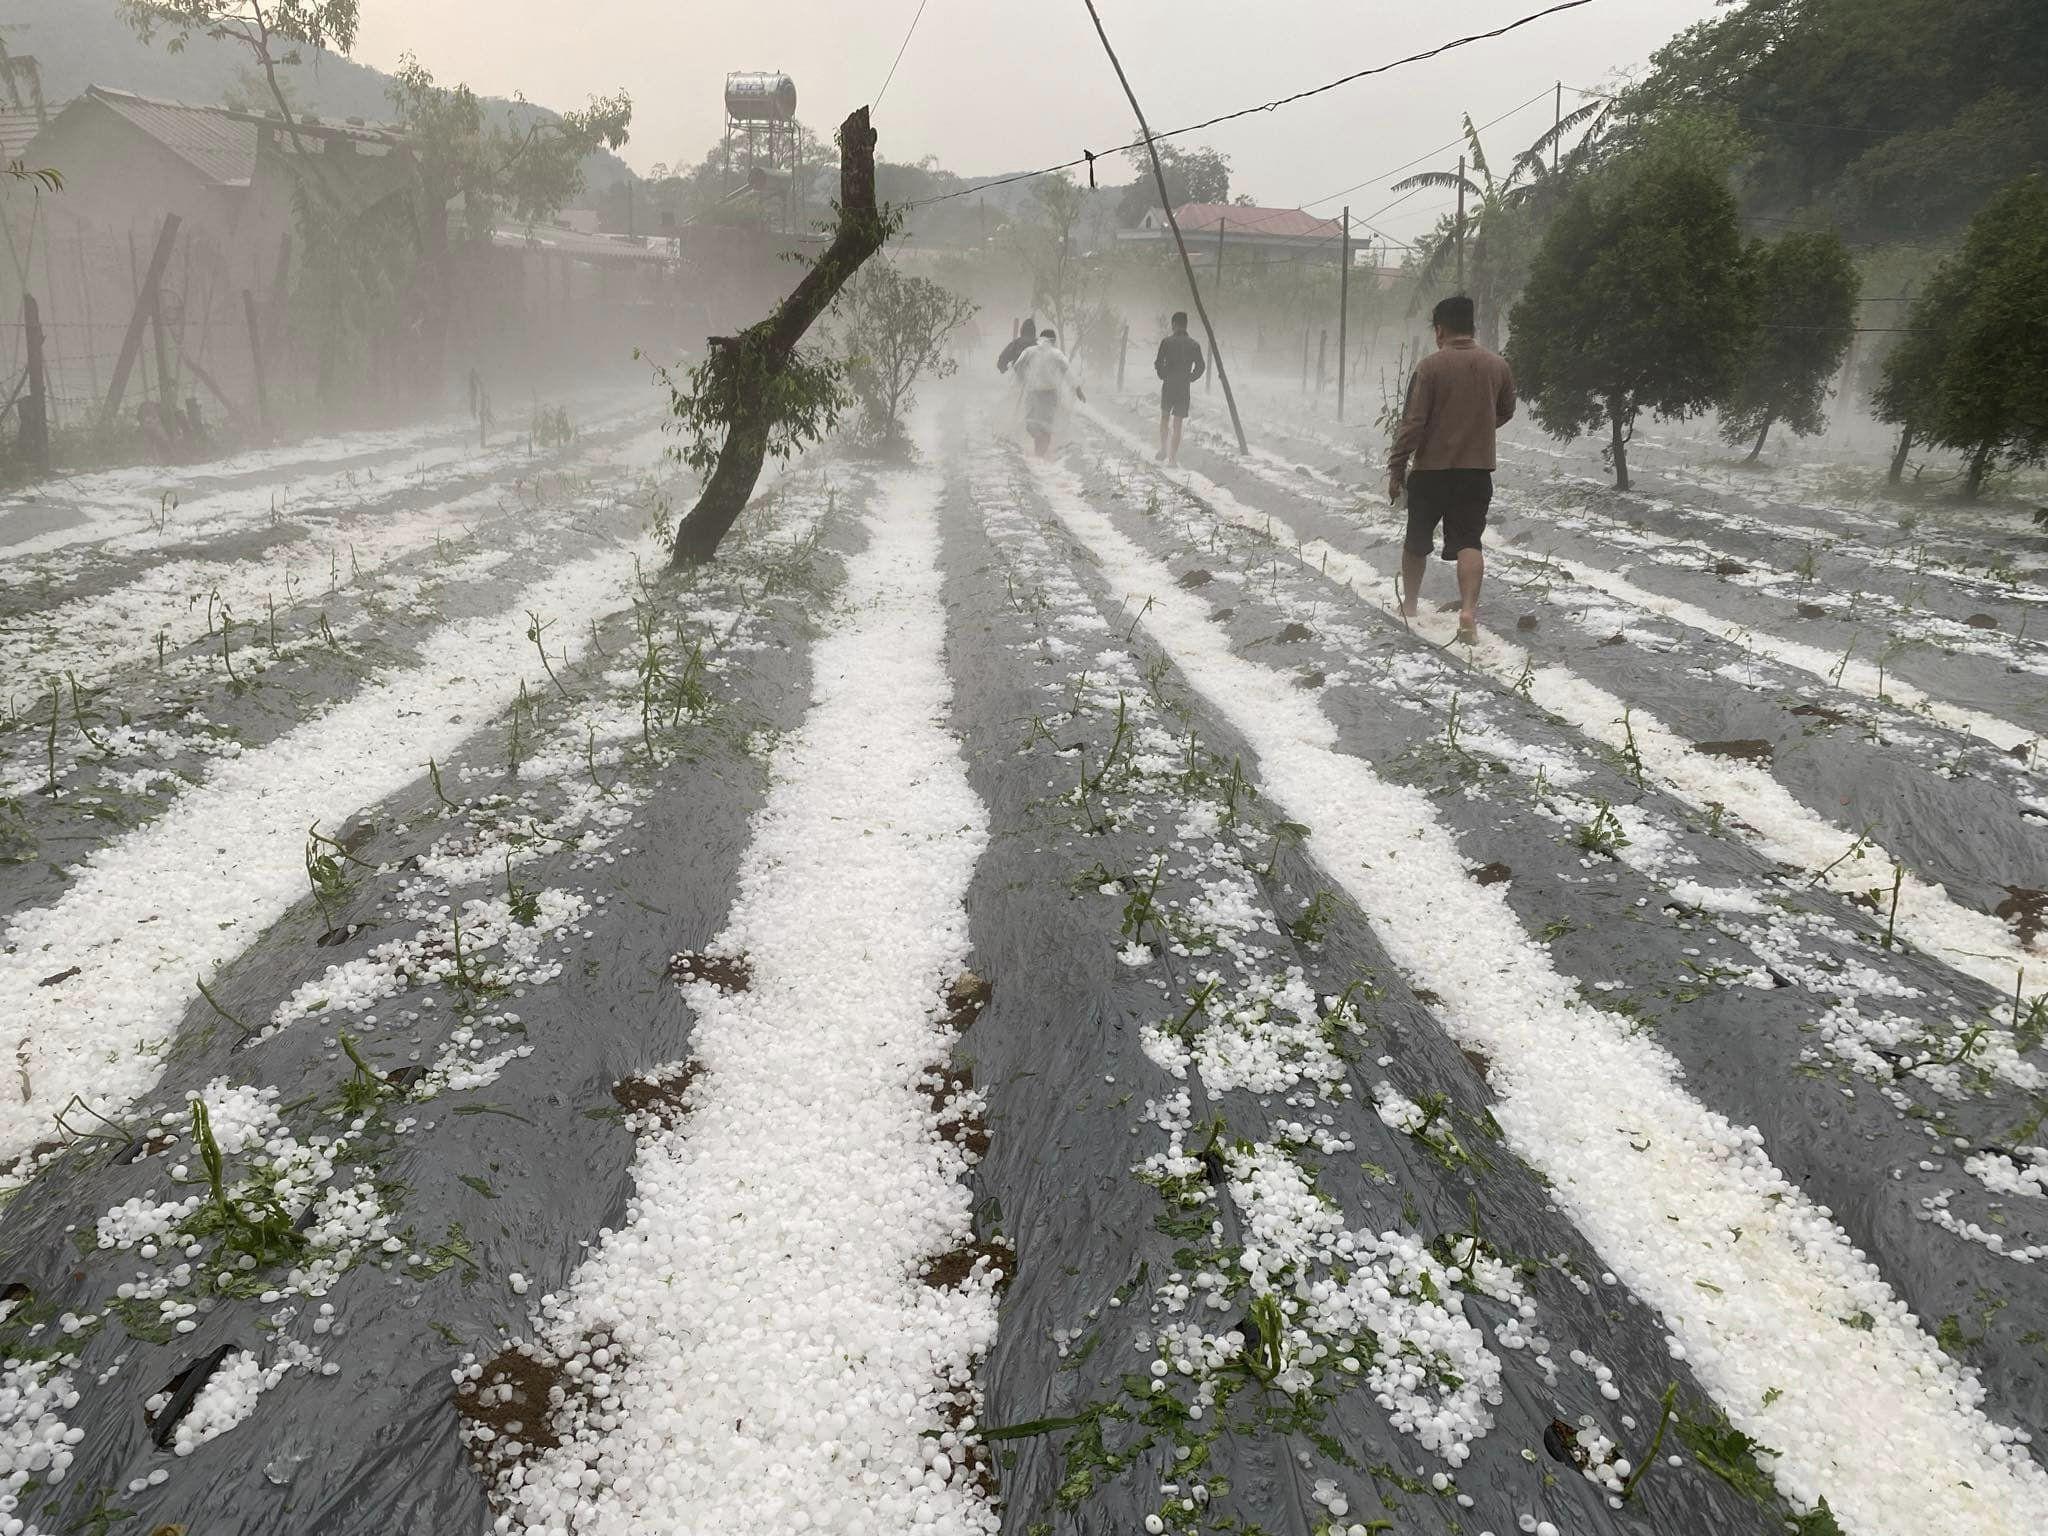 Nhiều người dân đánh giá, đây là trận mưa đá lớn nhất và chưa từng xuất hiện tại huyện Vân Hồ. Ảnh: Tin tức Sơn La